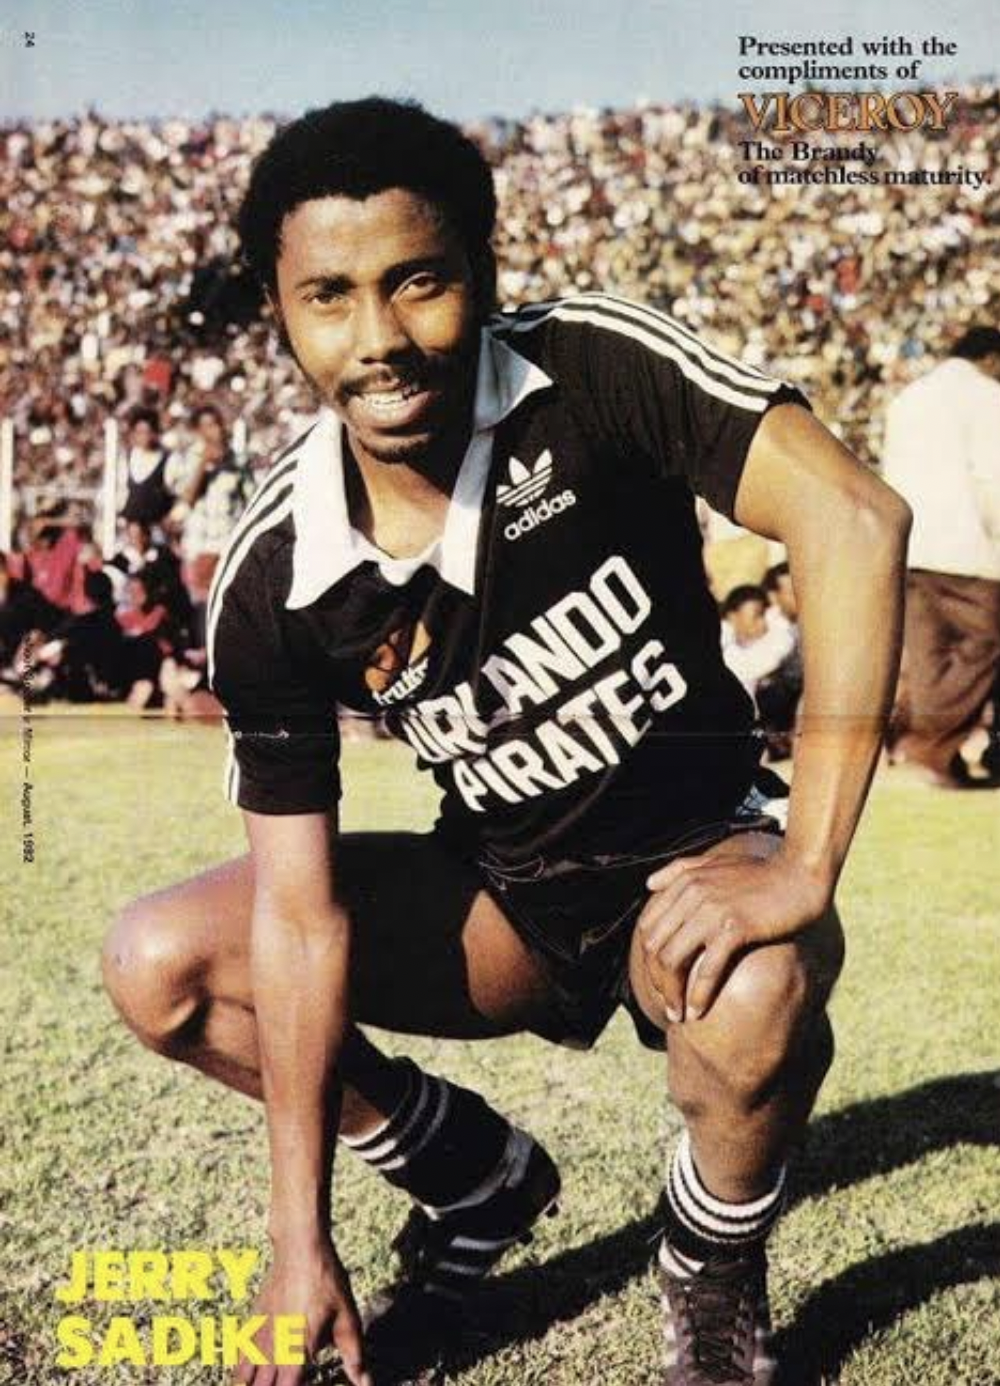 Former Kaizer Chiefs and Orlando Pirates player Jerry Sadike